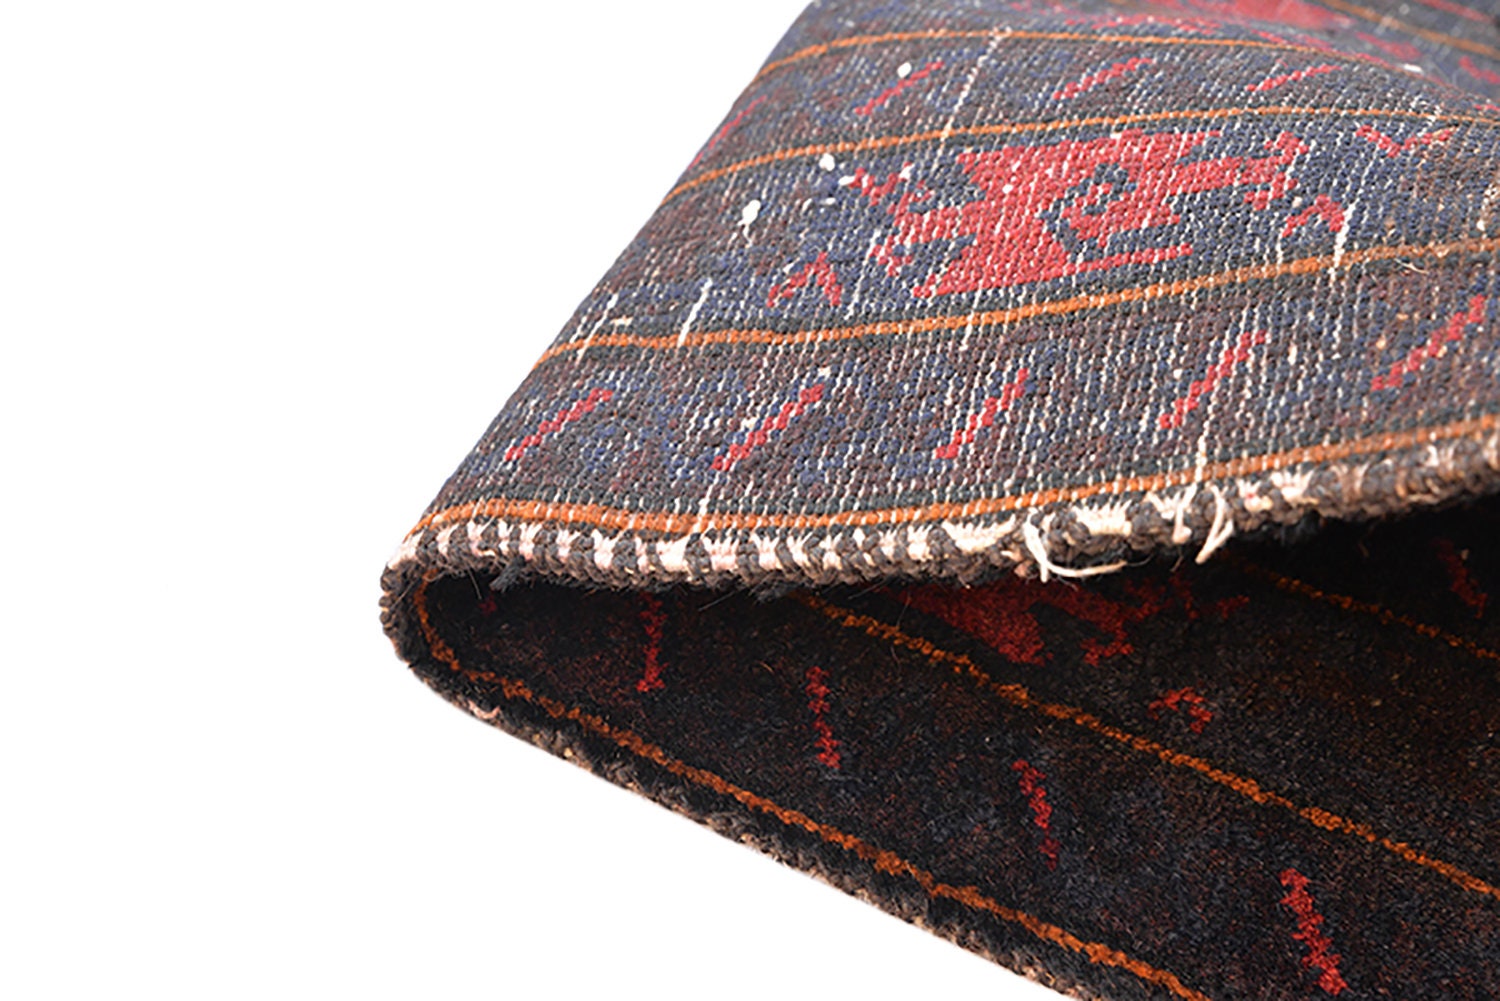 Navy Kazak Rug | 5 x 8 Rug | Blue Red Geometric Rug | Tribal Vintage Rug | Wool Area Rug